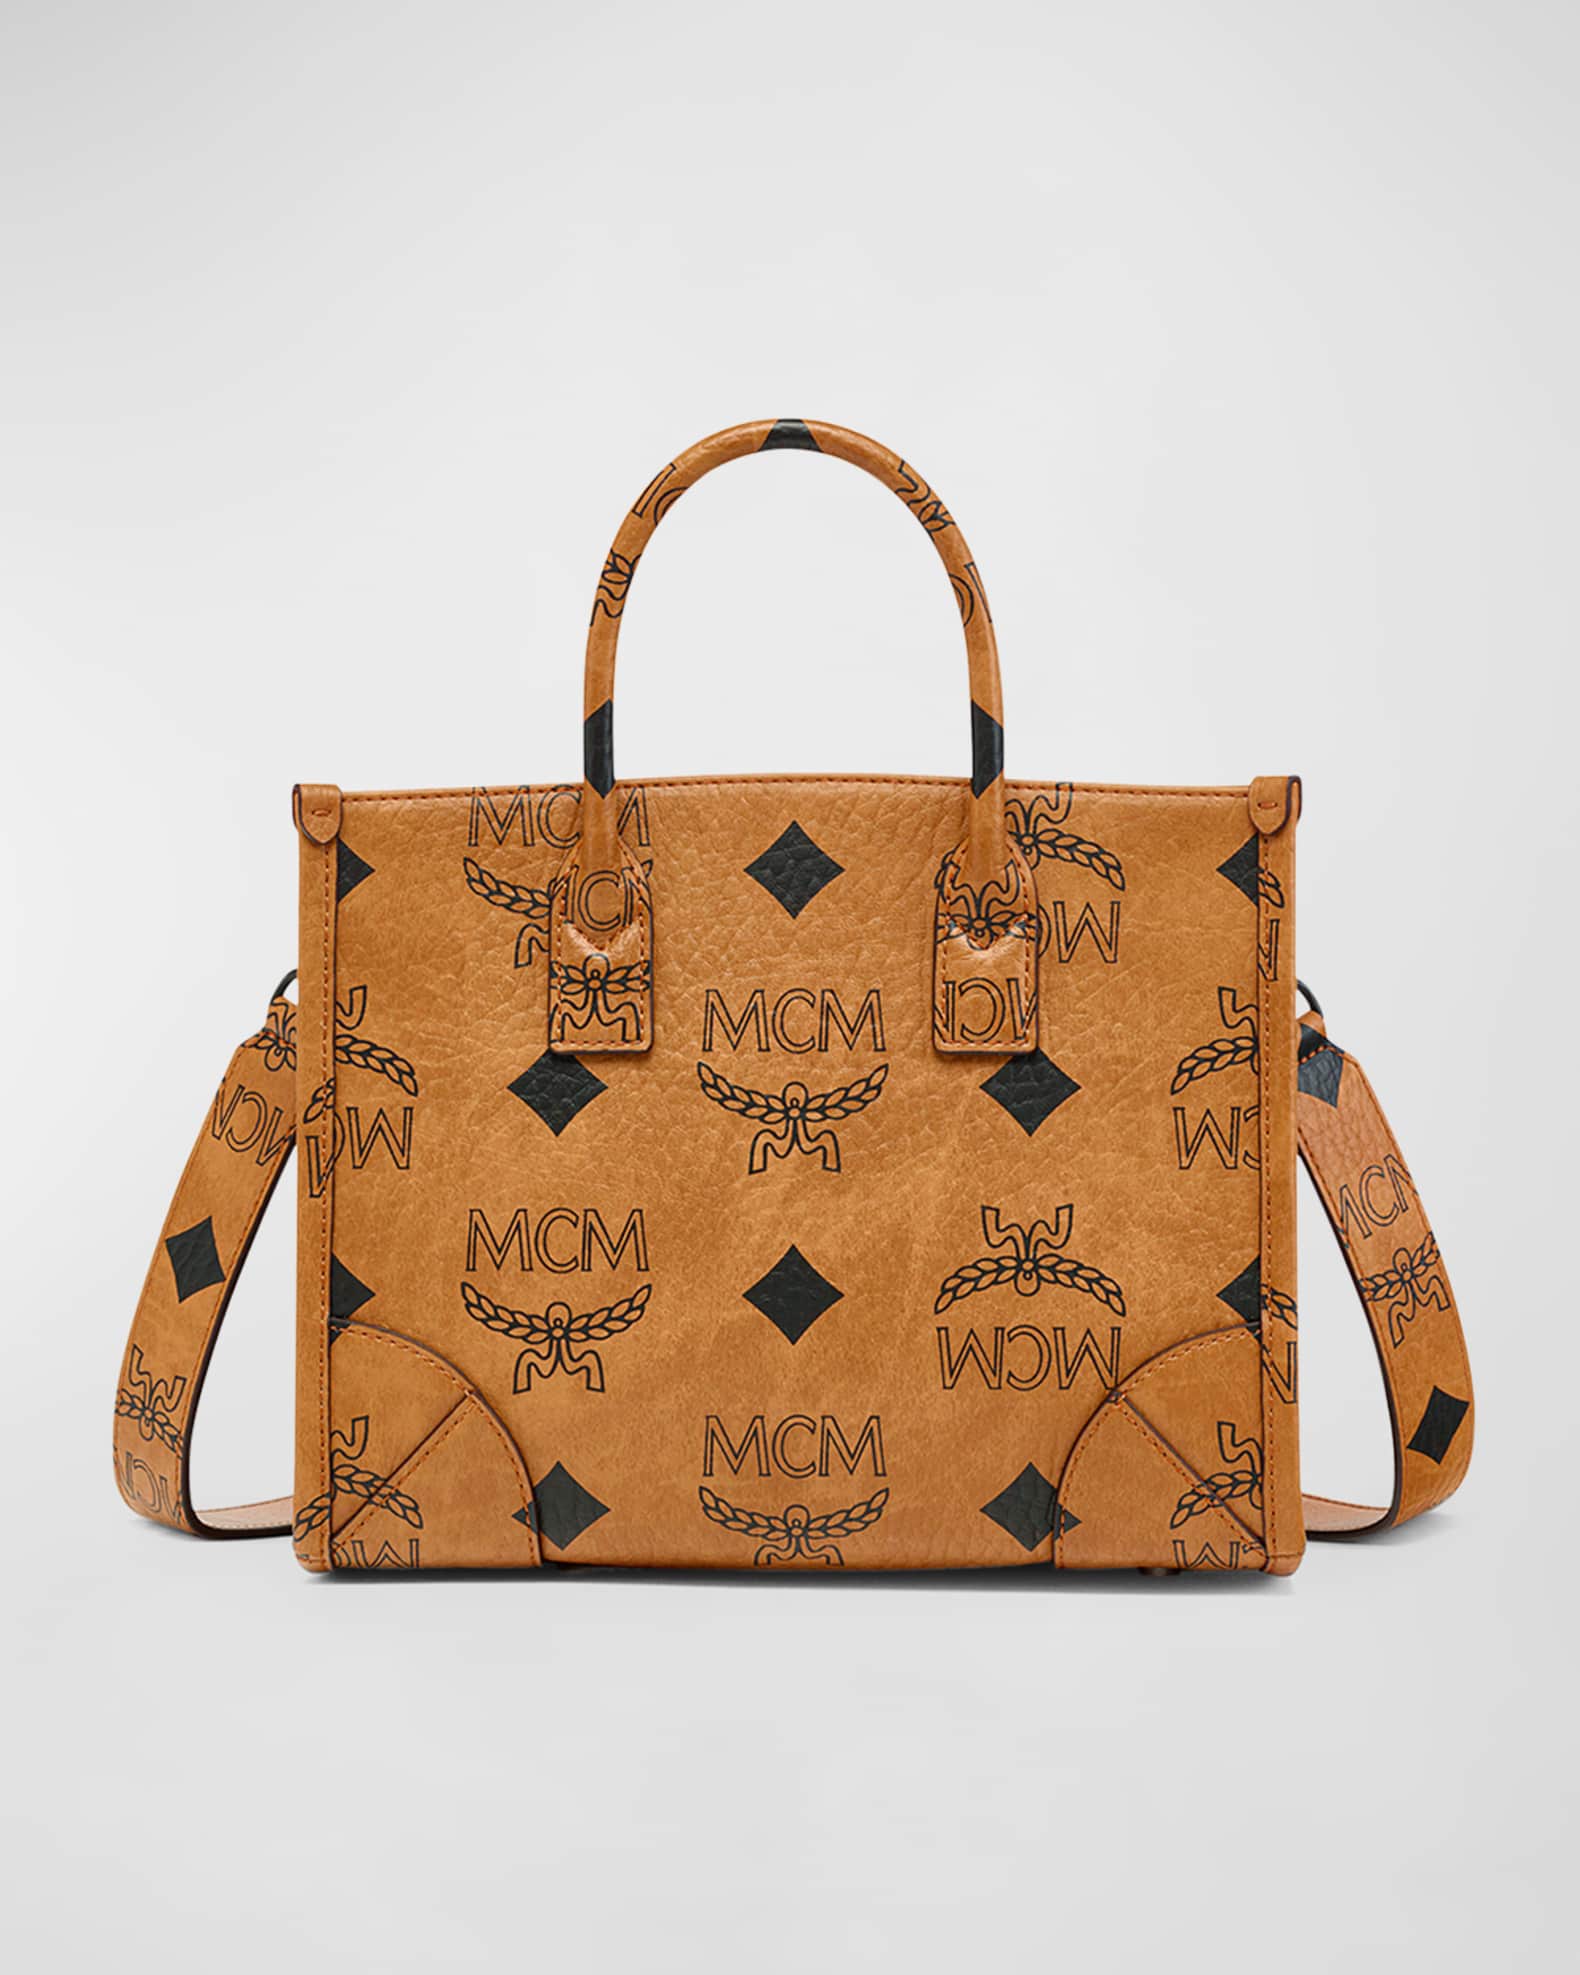 MCM Munchen Maxi Tote Bag